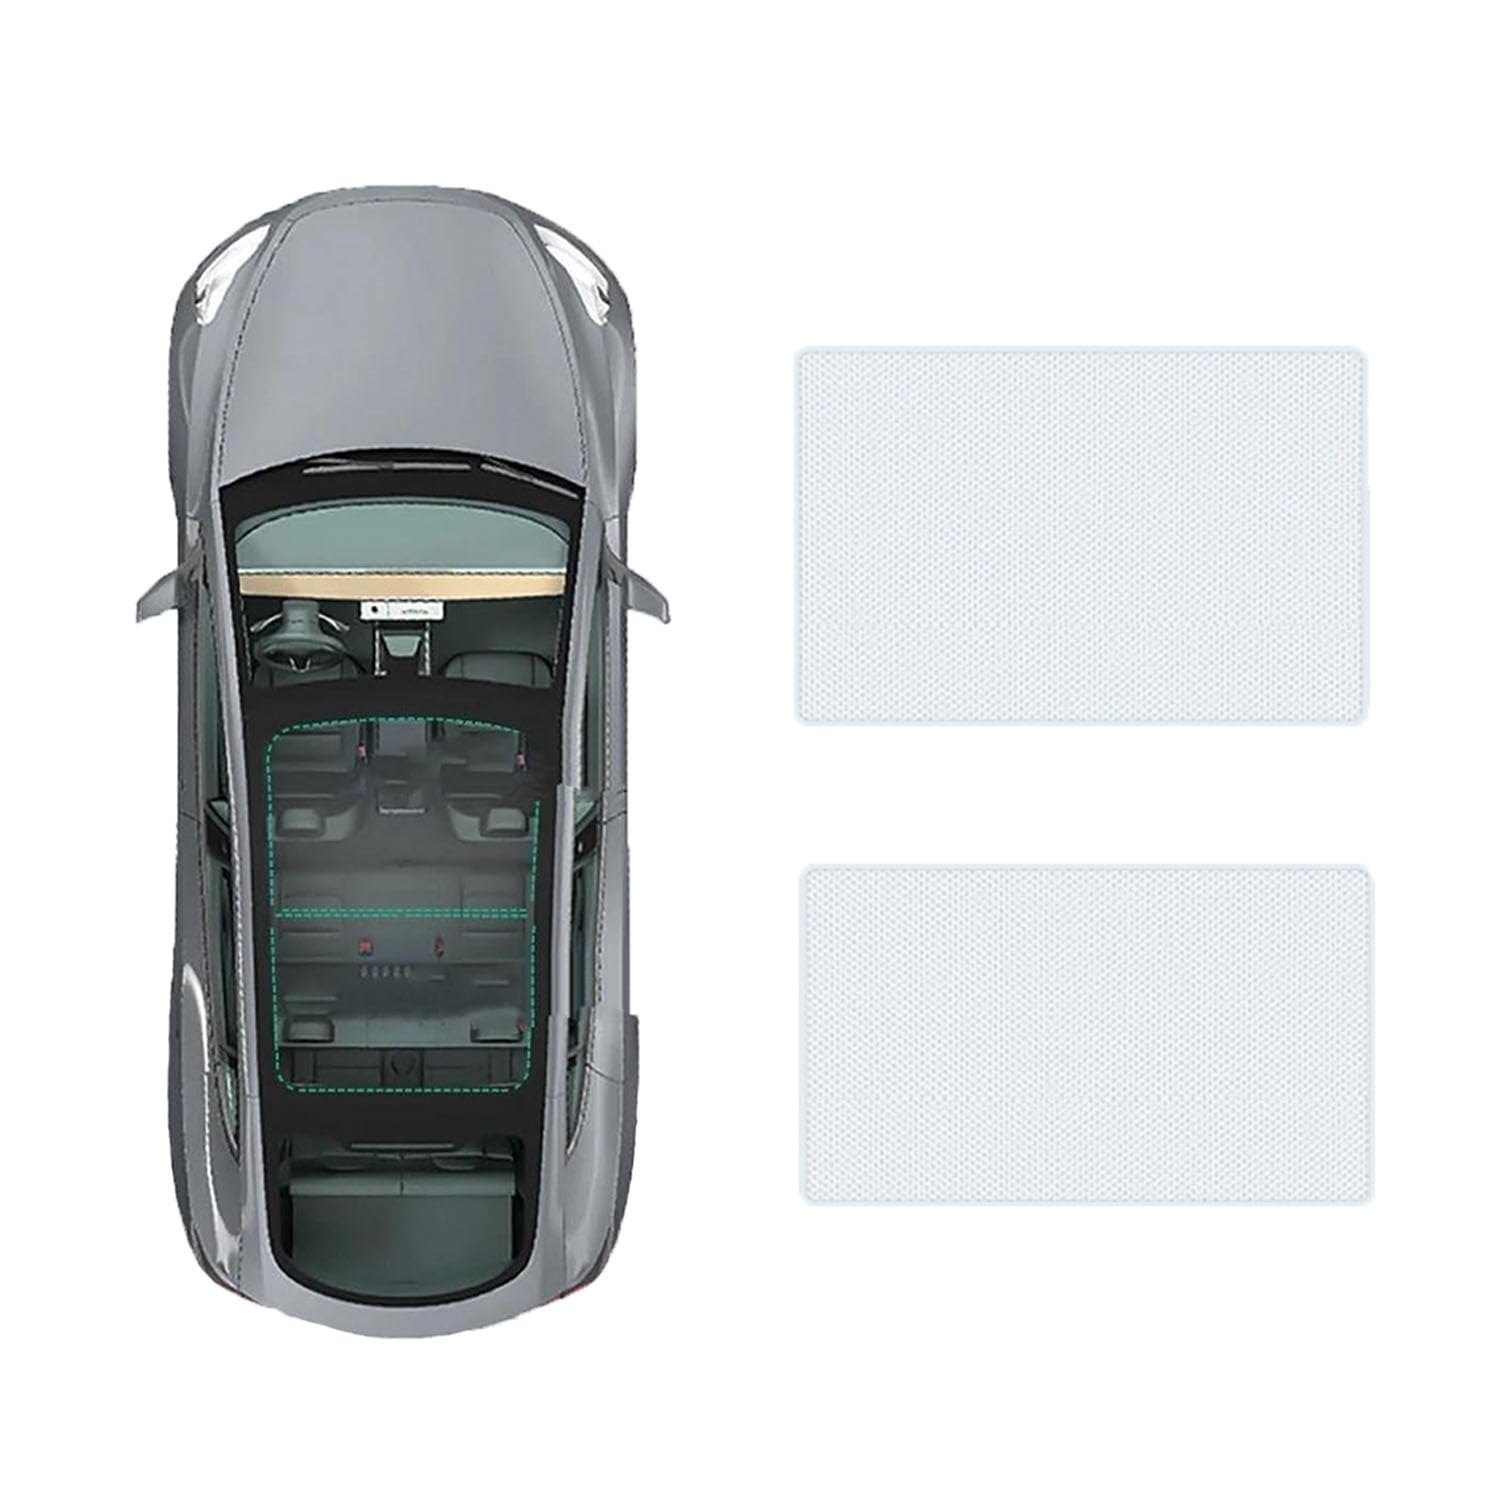 Für VW Touran L 2016- Auto-Schiebedach-Beschattung,Dach Wärme Isolierung Anti-UV Visier Auto Zubehör,A-Gray white regular Style von ANRAM